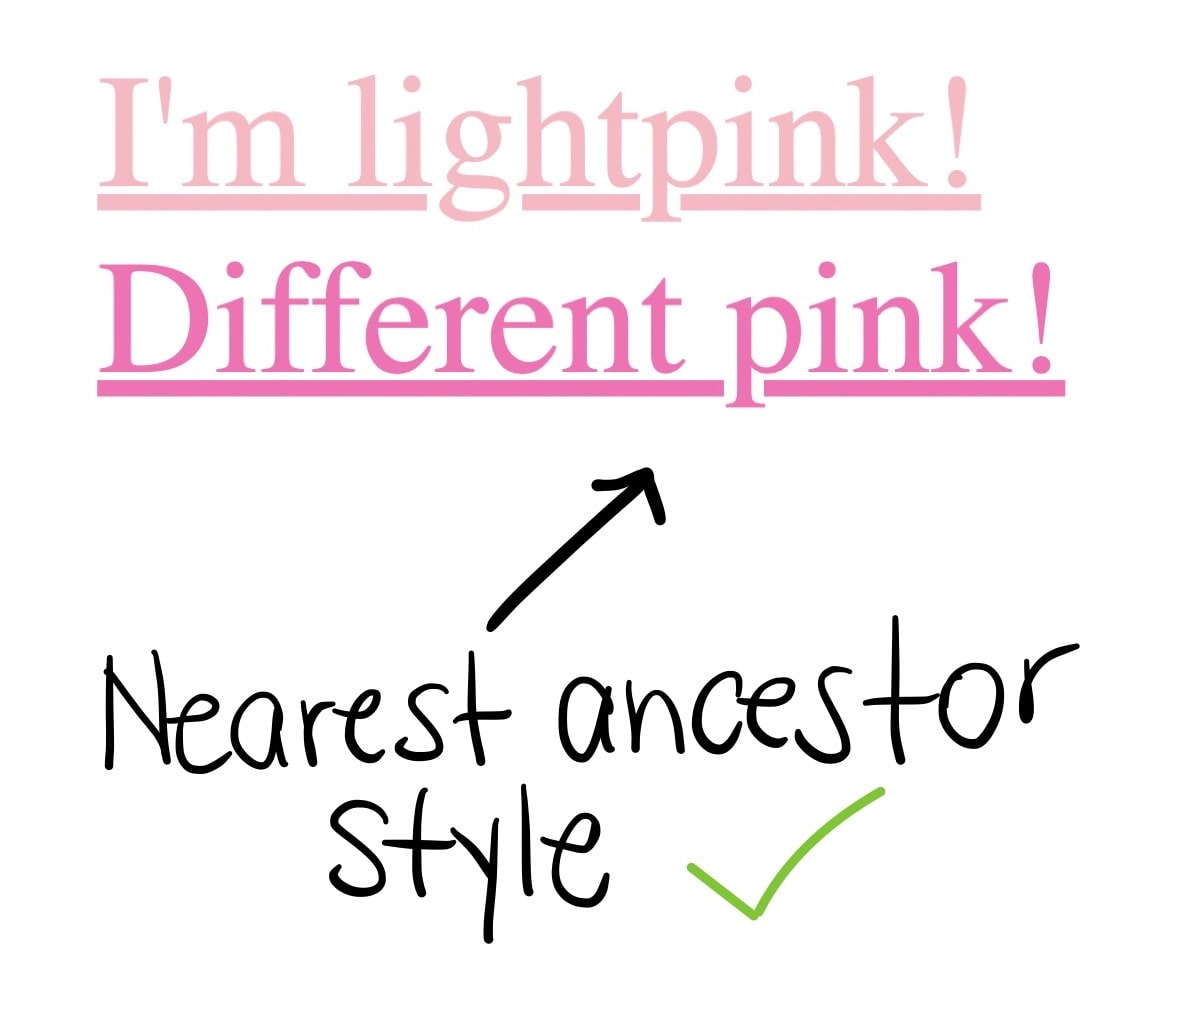 有兩個連結，第一個連結寫著「我是閃亮耀眼！」第二個連結是「不同粉紅色」，第二個連結是較深的粉紅色，連結文字下方是最祖系樣式，旁邊有綠色勾號。